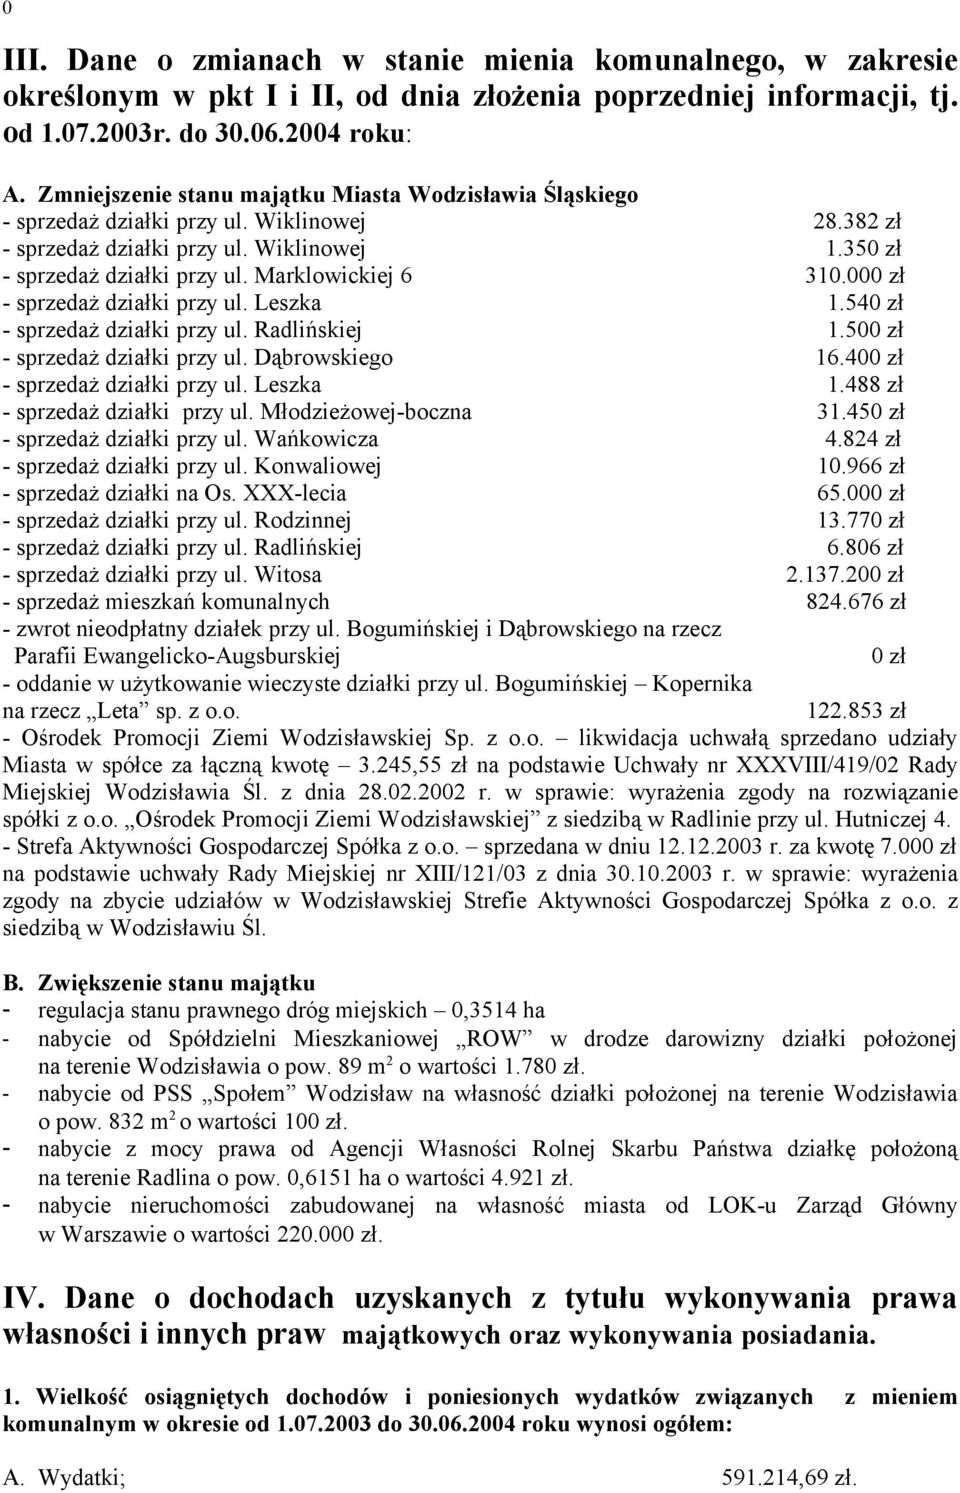 zł - sprzedaż działki przy ul. Leszka 1.54 zł - sprzedaż działki przy ul. Radlińskiej 1.5 zł - sprzedaż działki przy ul. Dąbrowskiego 16.4 zł - sprzedaż działki przy ul. Leszka 1.488 zł - sprzedaż działki przy ul.